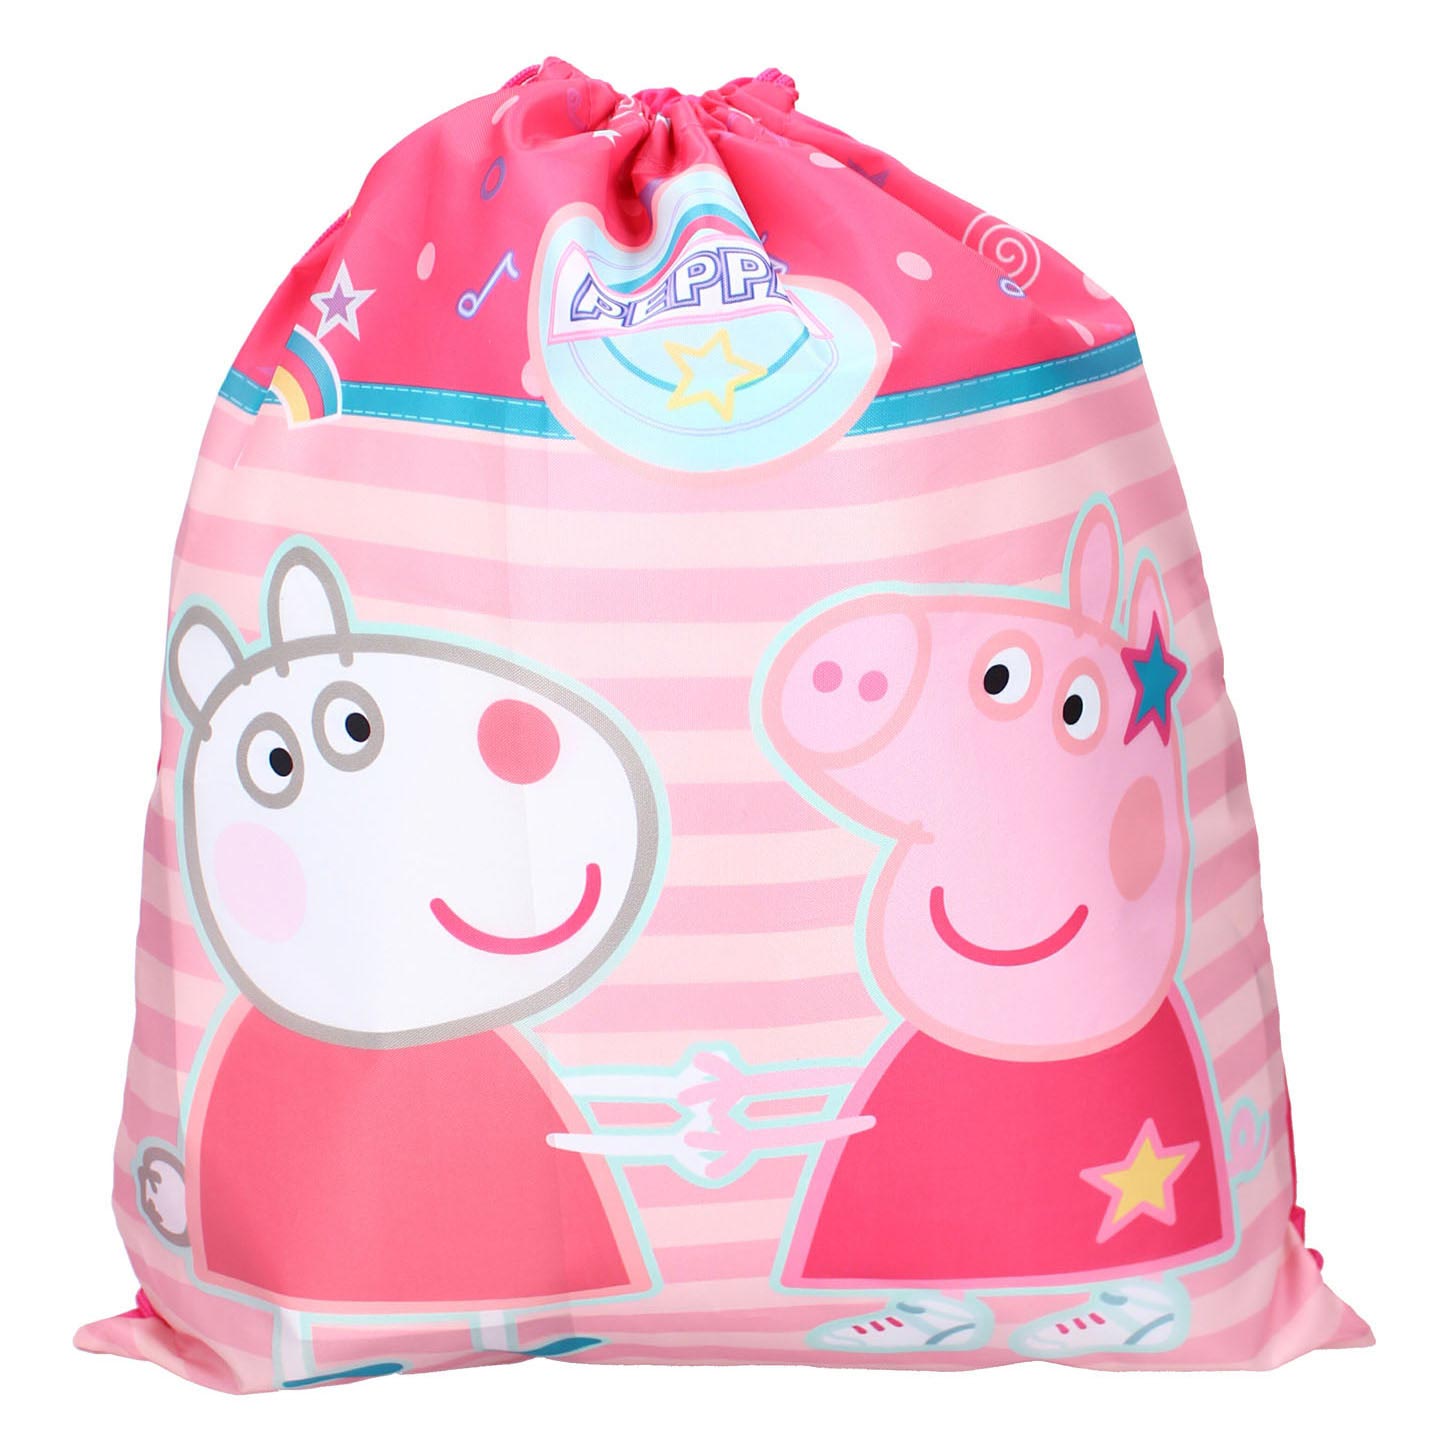 Peppa Pig Bag Set, Kids Toys for Ages 3 up | eBay